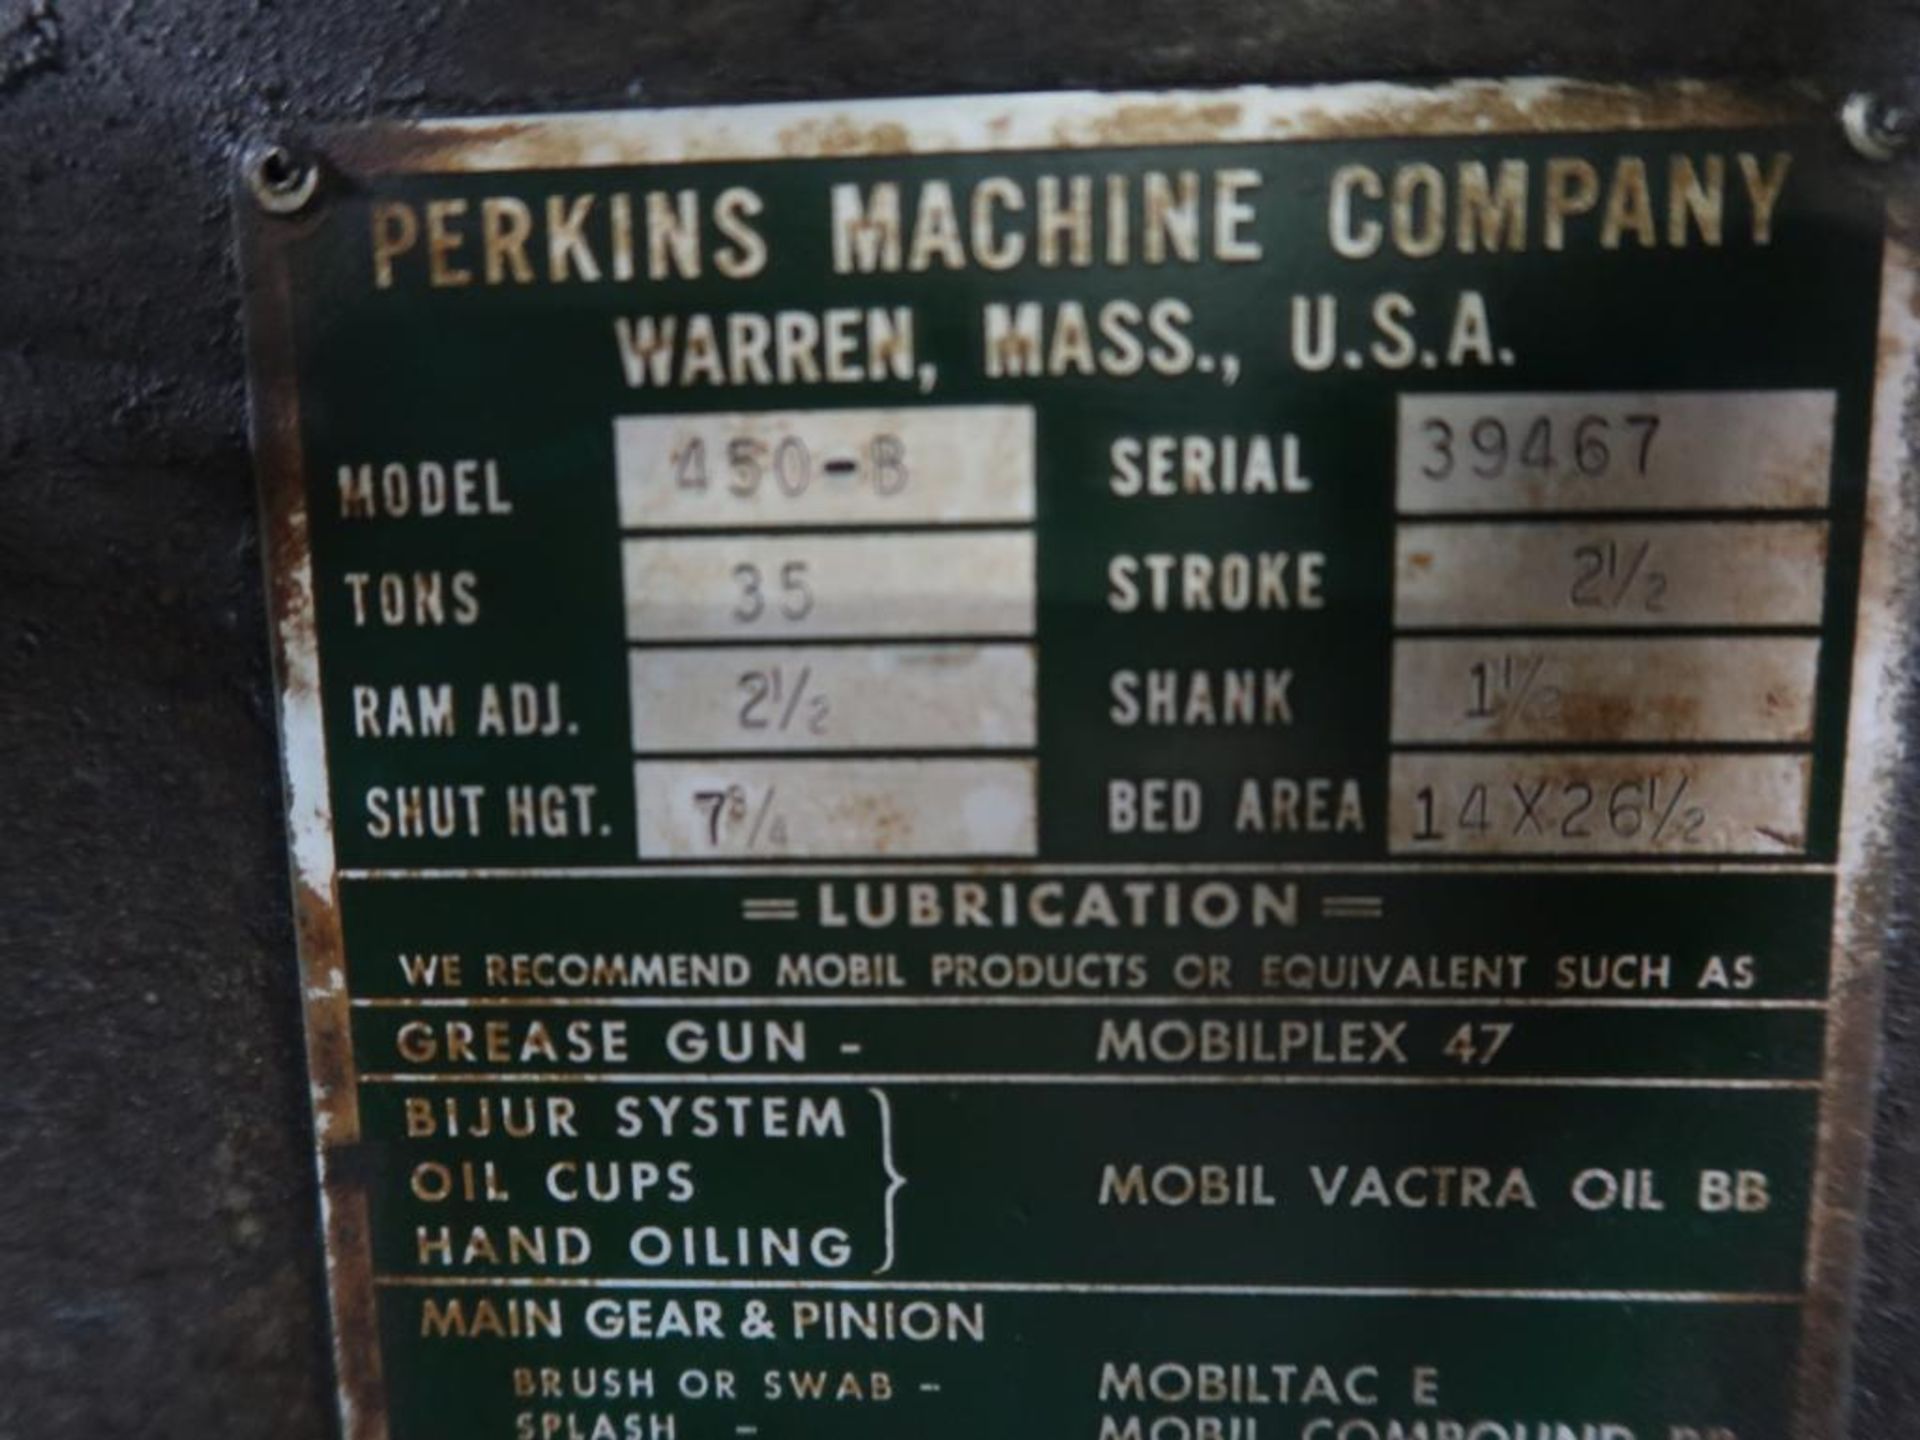 Perkins 35 Ton OBI Press Model 450-B, S/N 39467, 14 in. x 26-1/2 in. Bed, 2-1/2 in. Stroke, 7-3/4 - Image 4 of 4